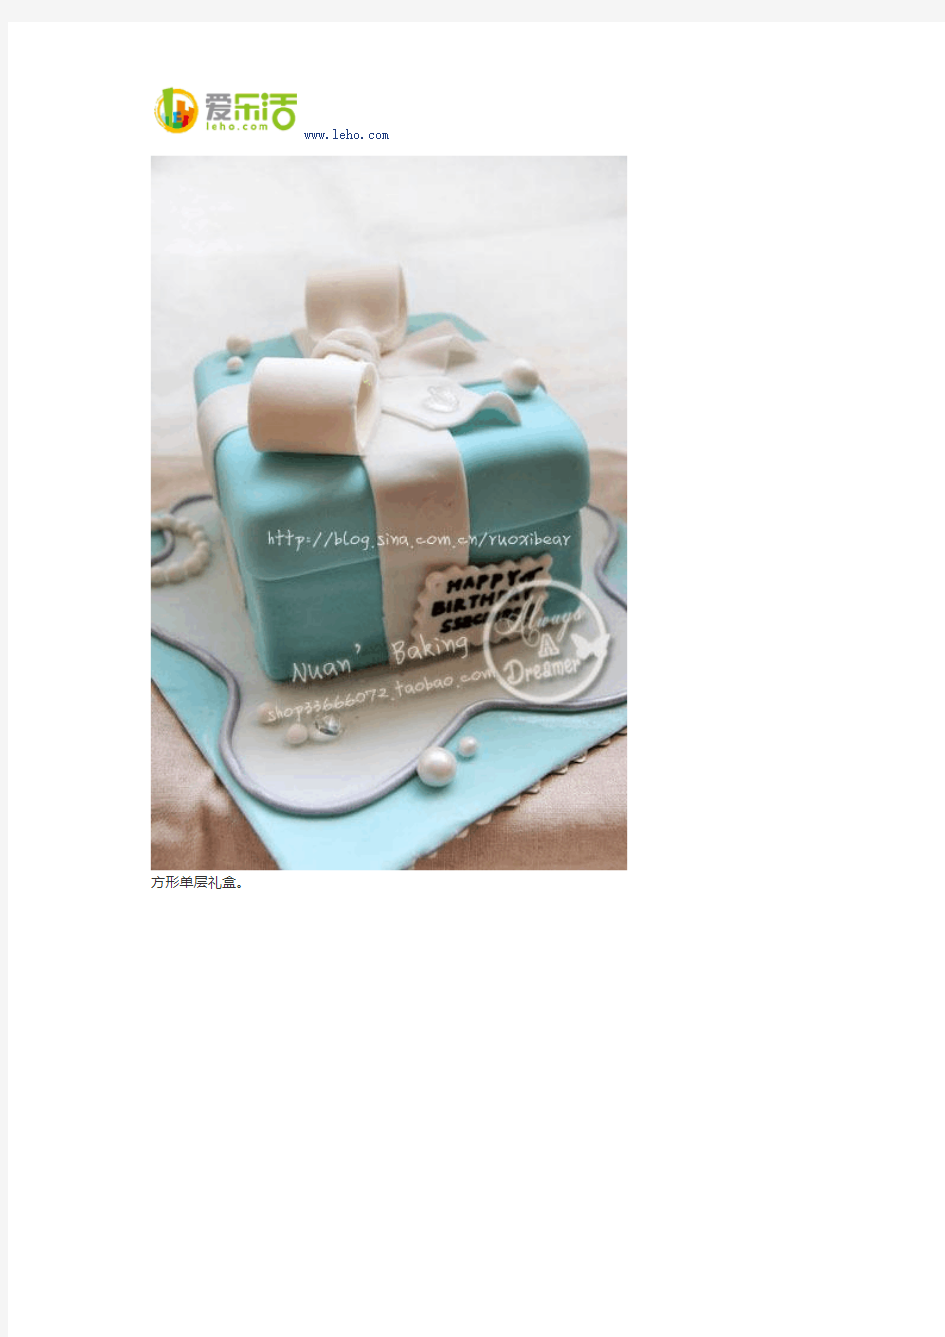 蒂凡尼tiffany蓝色礼盒 系列生日蛋糕礼物!!女朋友会开心哦~